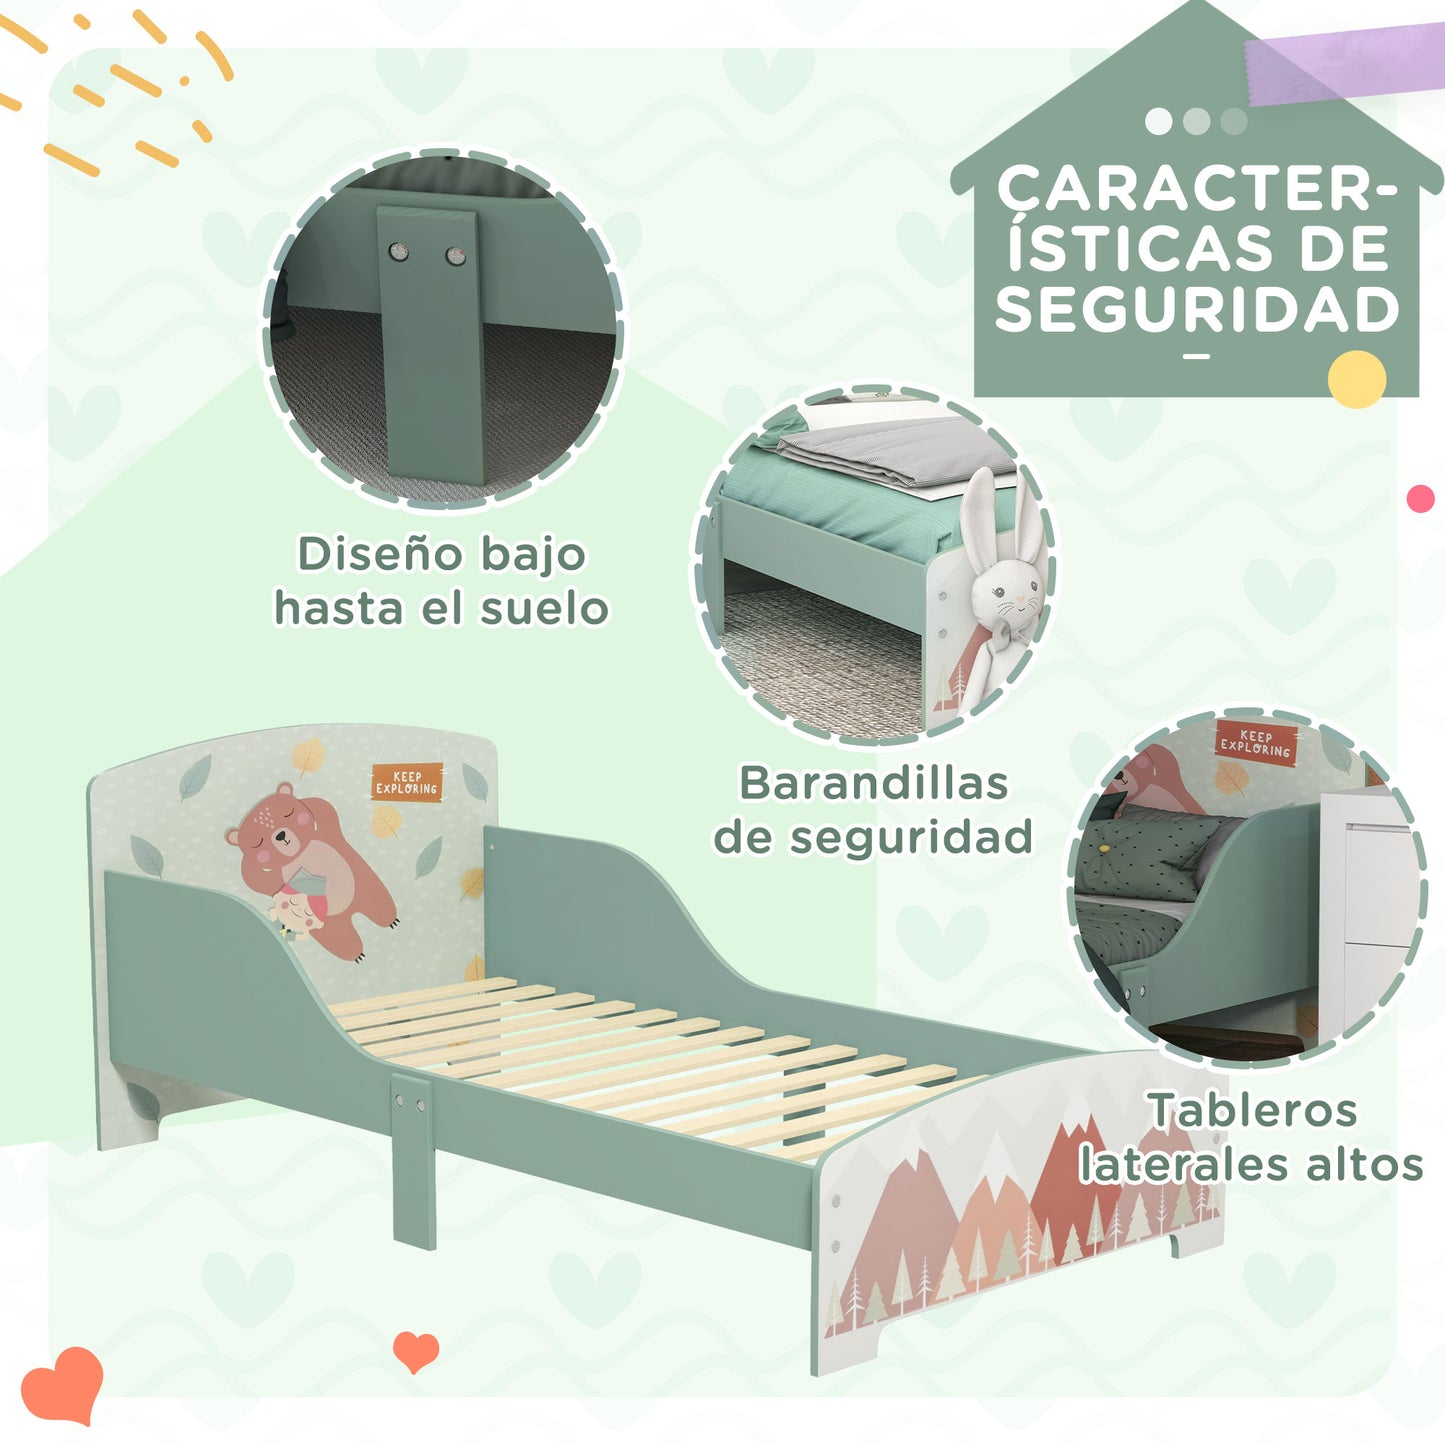 ZONEKIZ Cama Infantil de Madera 143x77x60 cm Cama para Niños de 3-6 Años con Barreras de Protección y Estampados Carga Máx. 40 kg Mueble de Dormitorio Moderno Verde